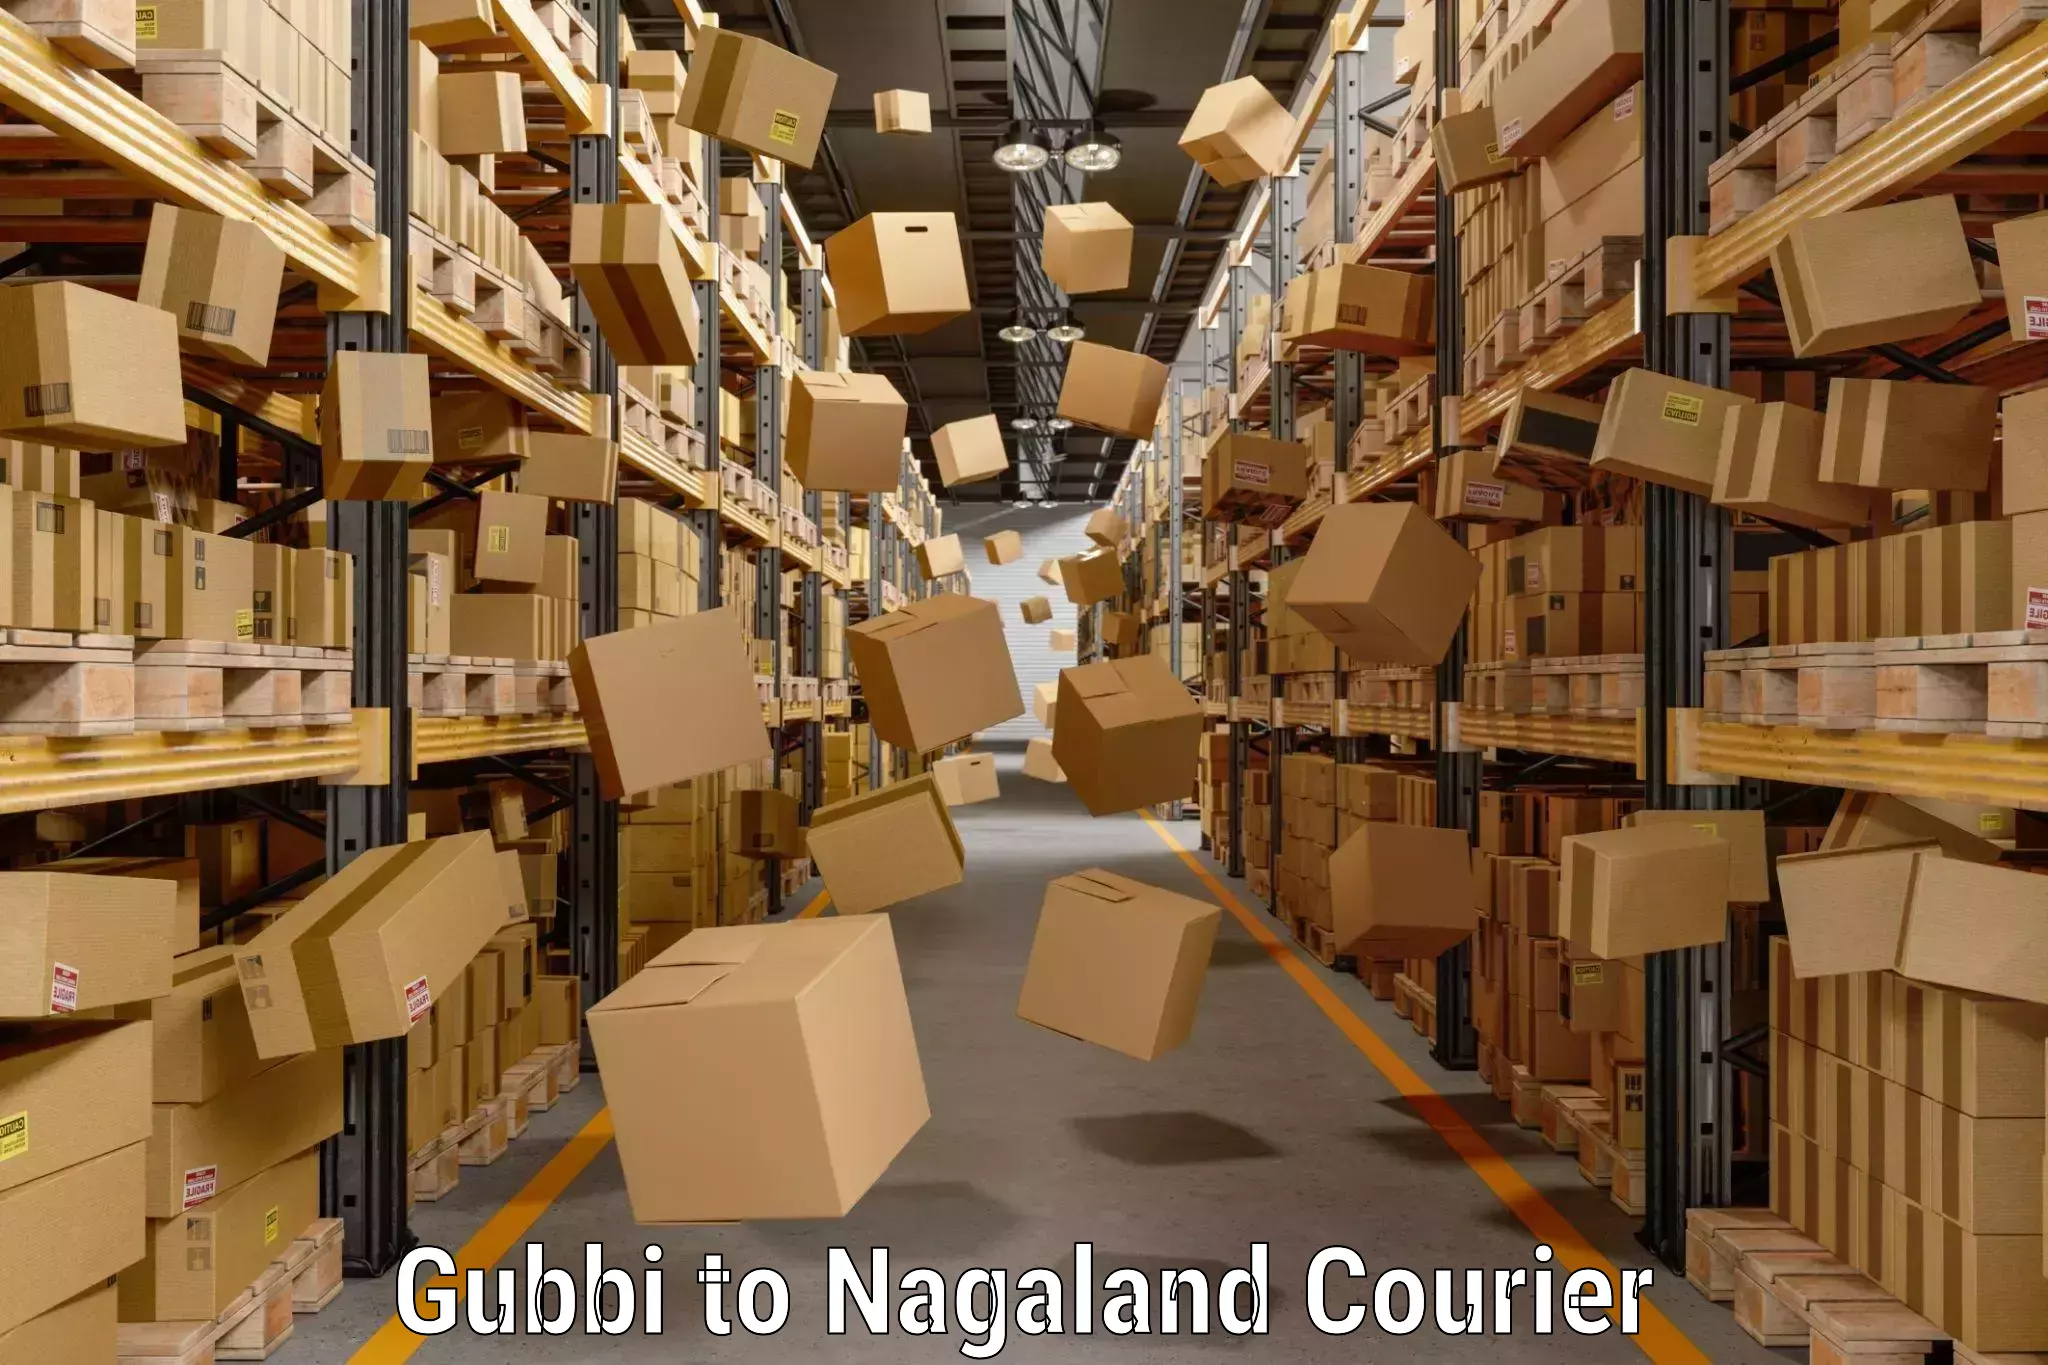 Automated luggage transport Gubbi to Nagaland